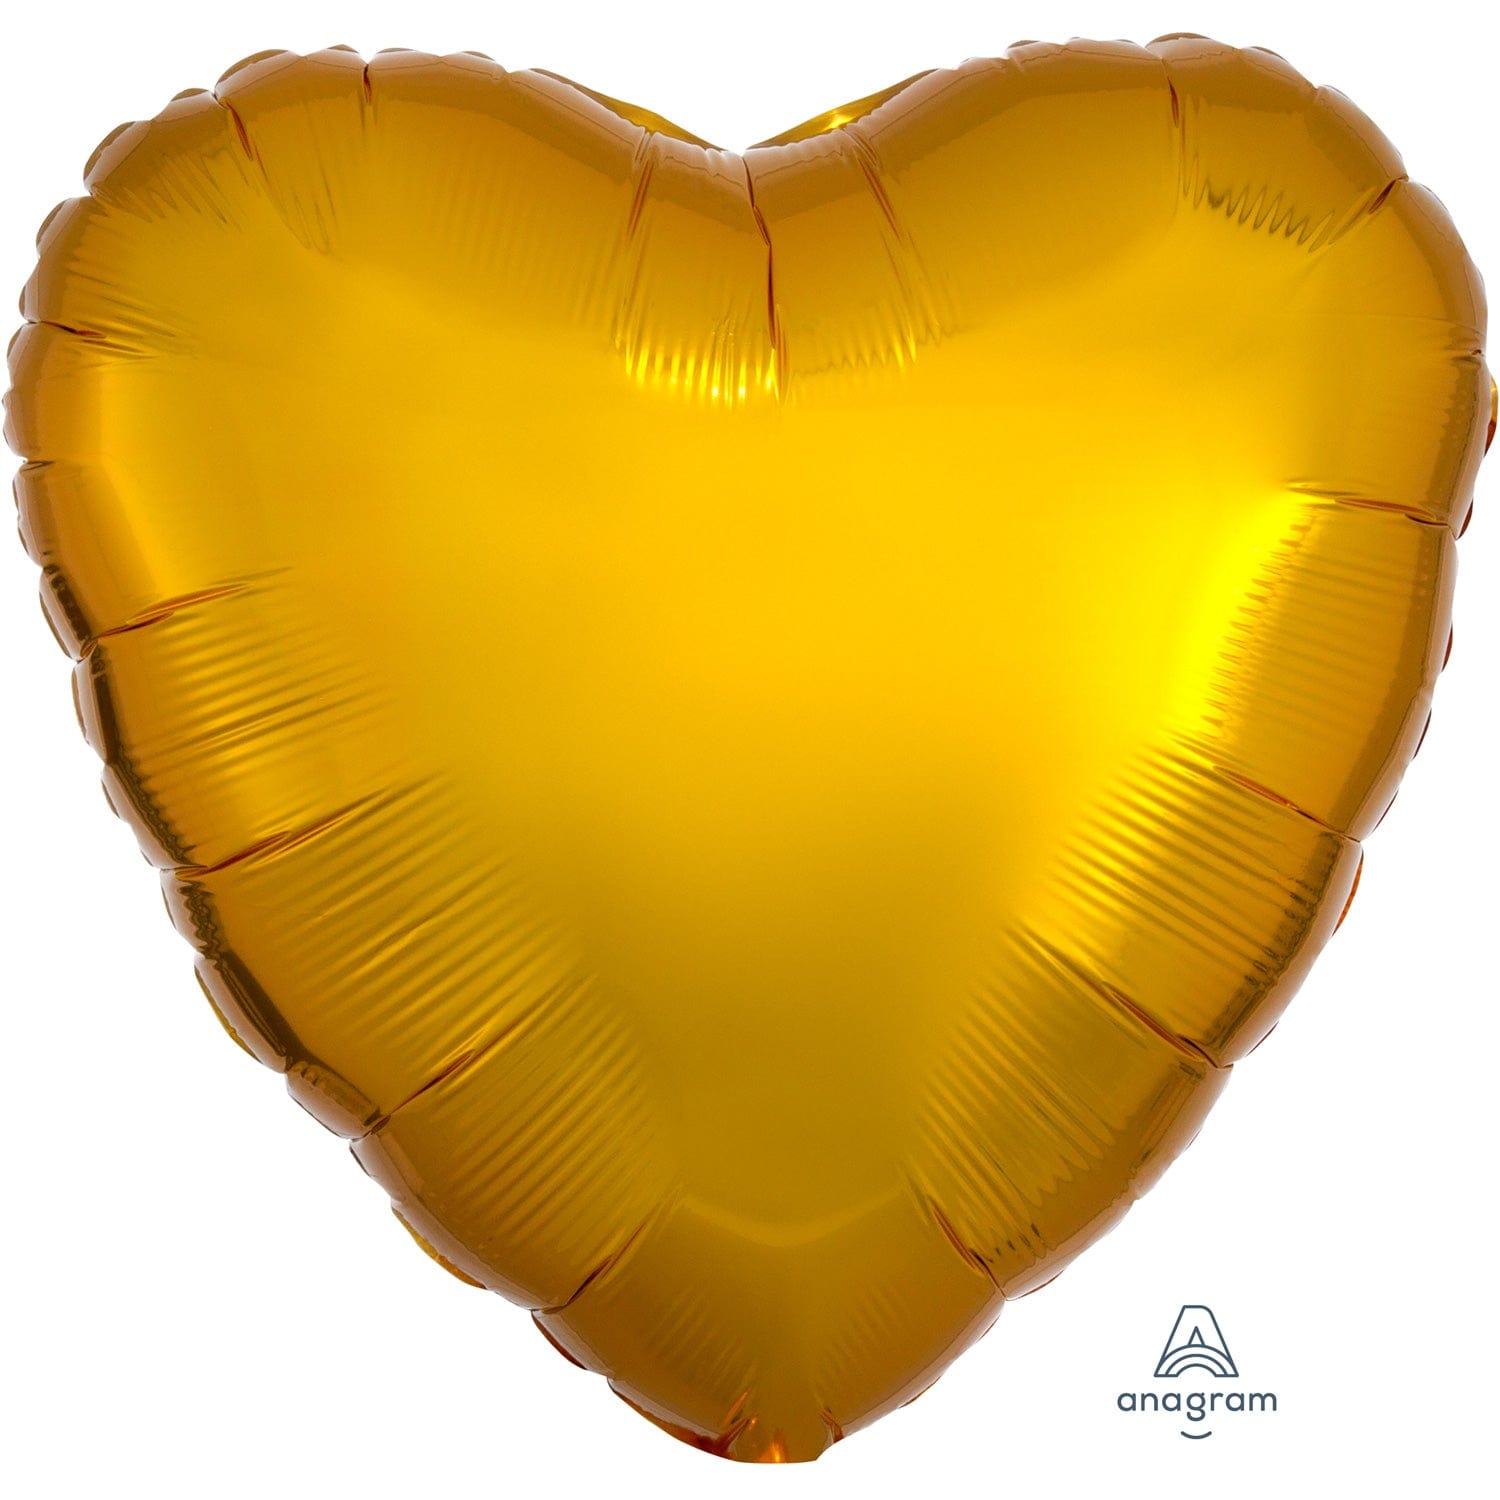 Metallic Gold Heart Standard 17" Foil Balloons